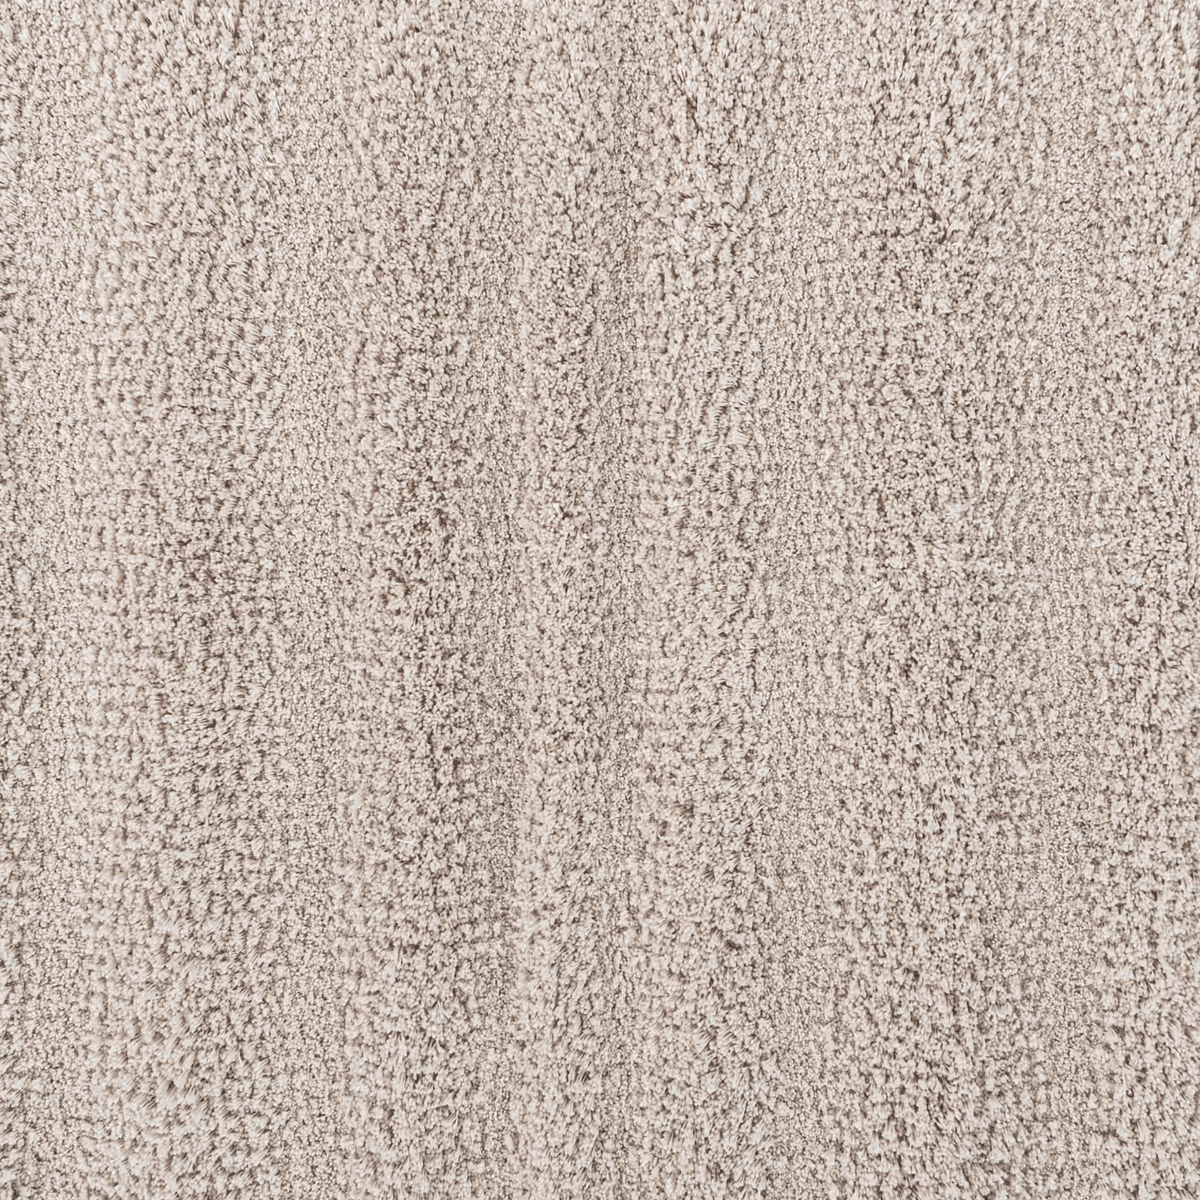 Fabric Closeup of Fog Graccioza Alentejo Bath Rugs